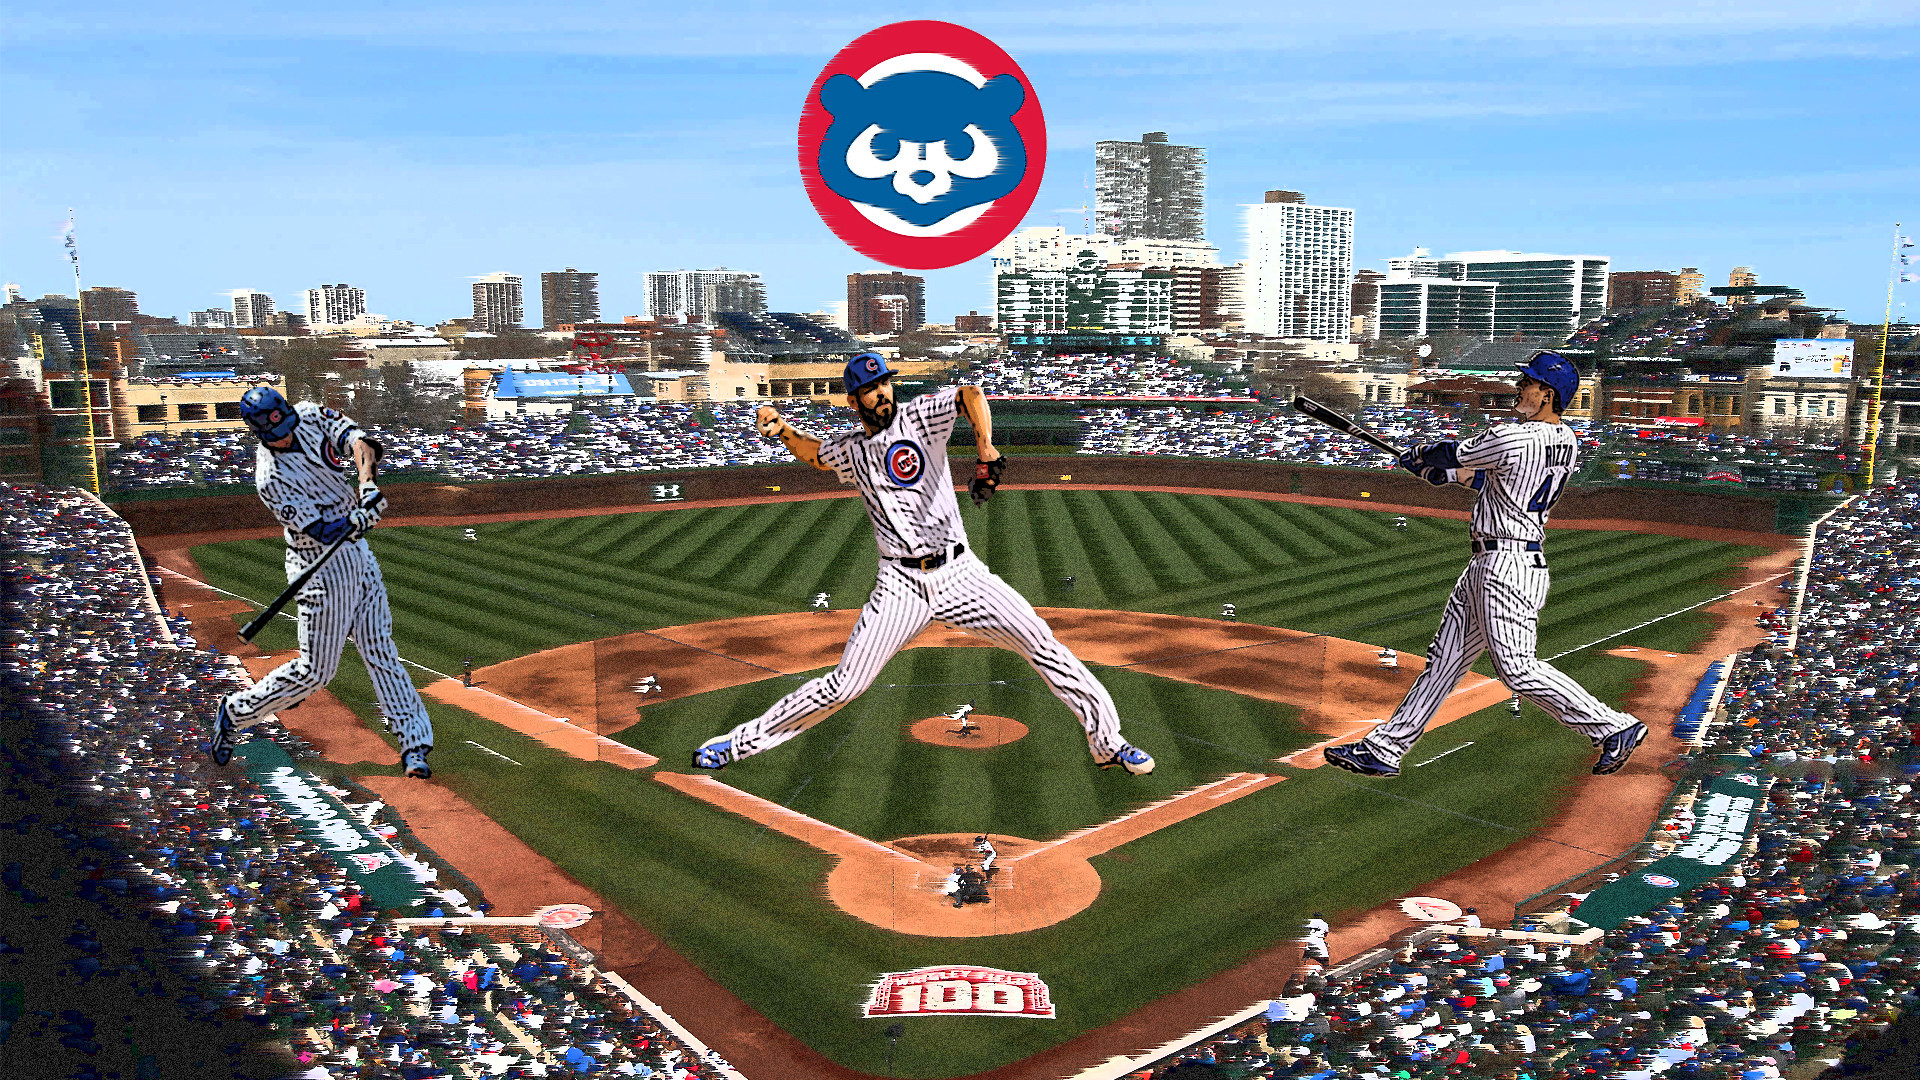 fond d'écran chicago cubs,parc de baseball,terrain de baseball,stade,joueur de baseball,base ball